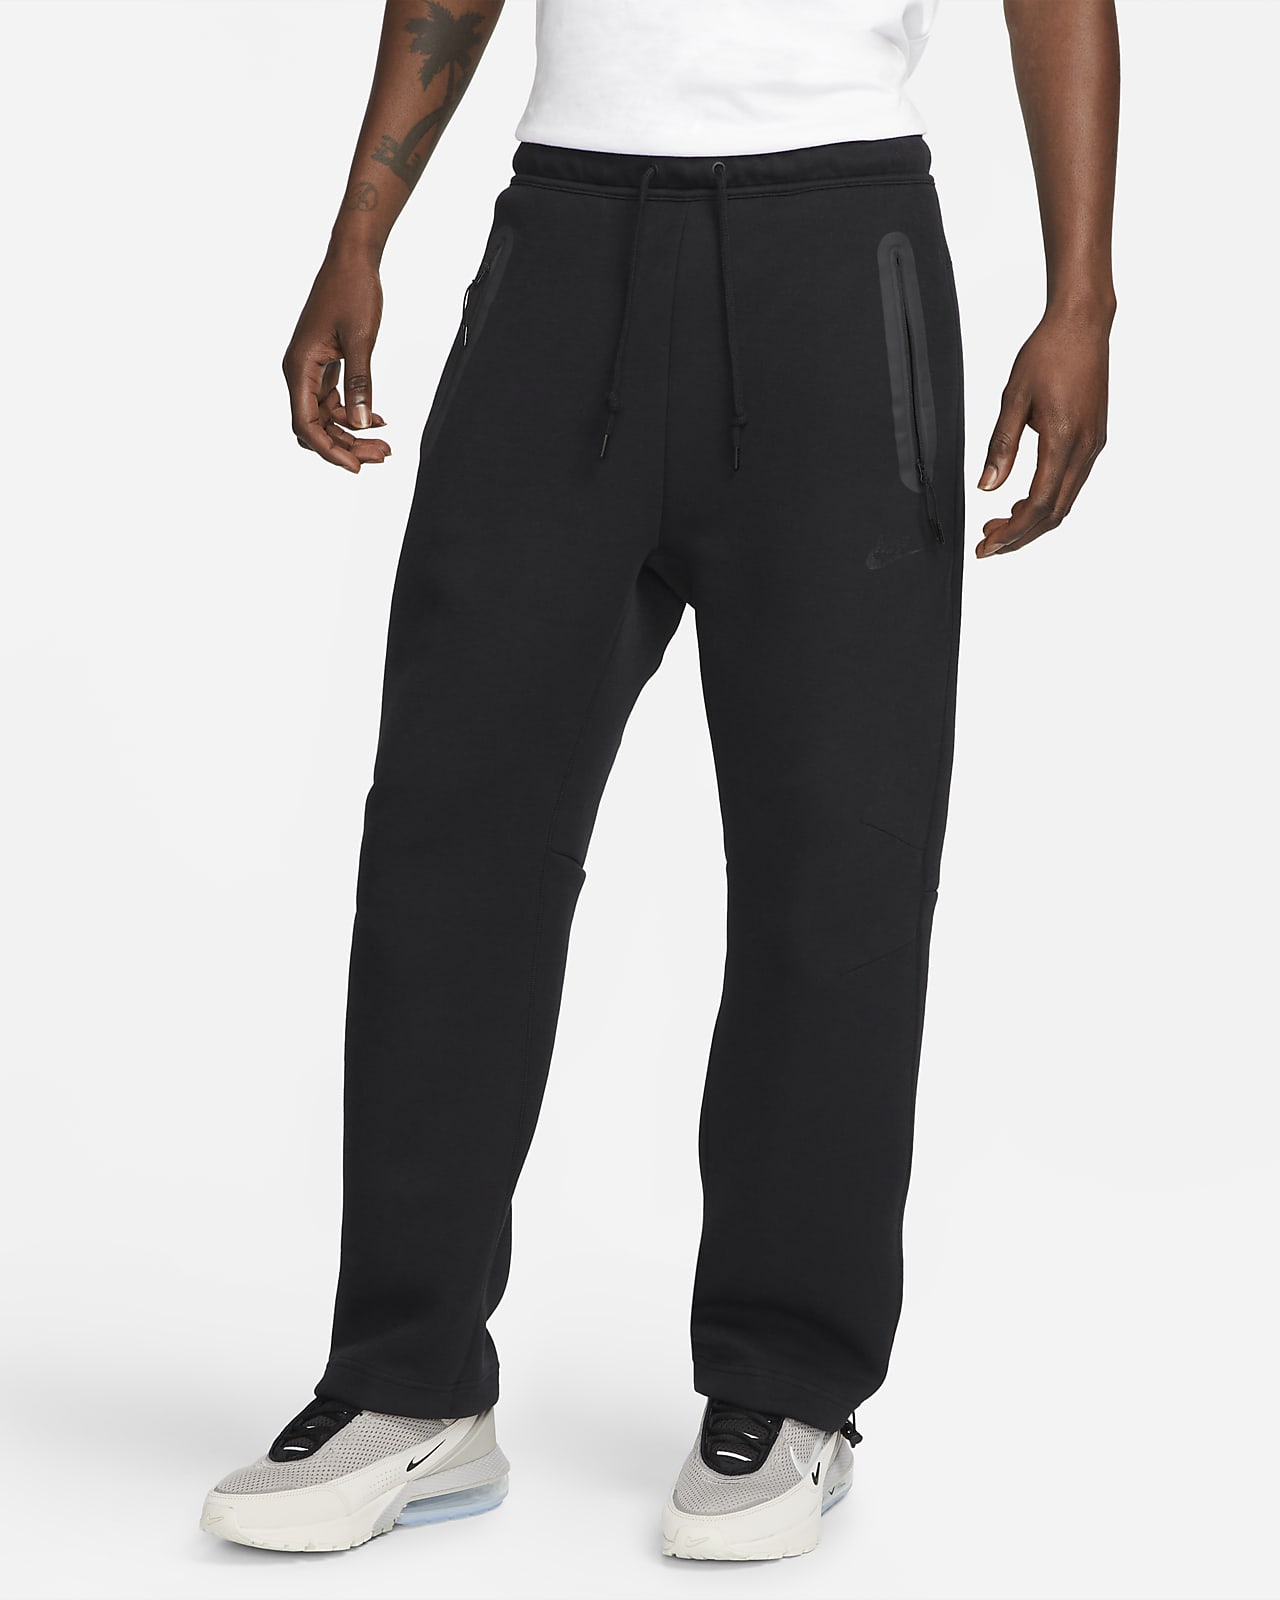 Pánské tepláky Nike Sportswear Tech Fleece bez manžet